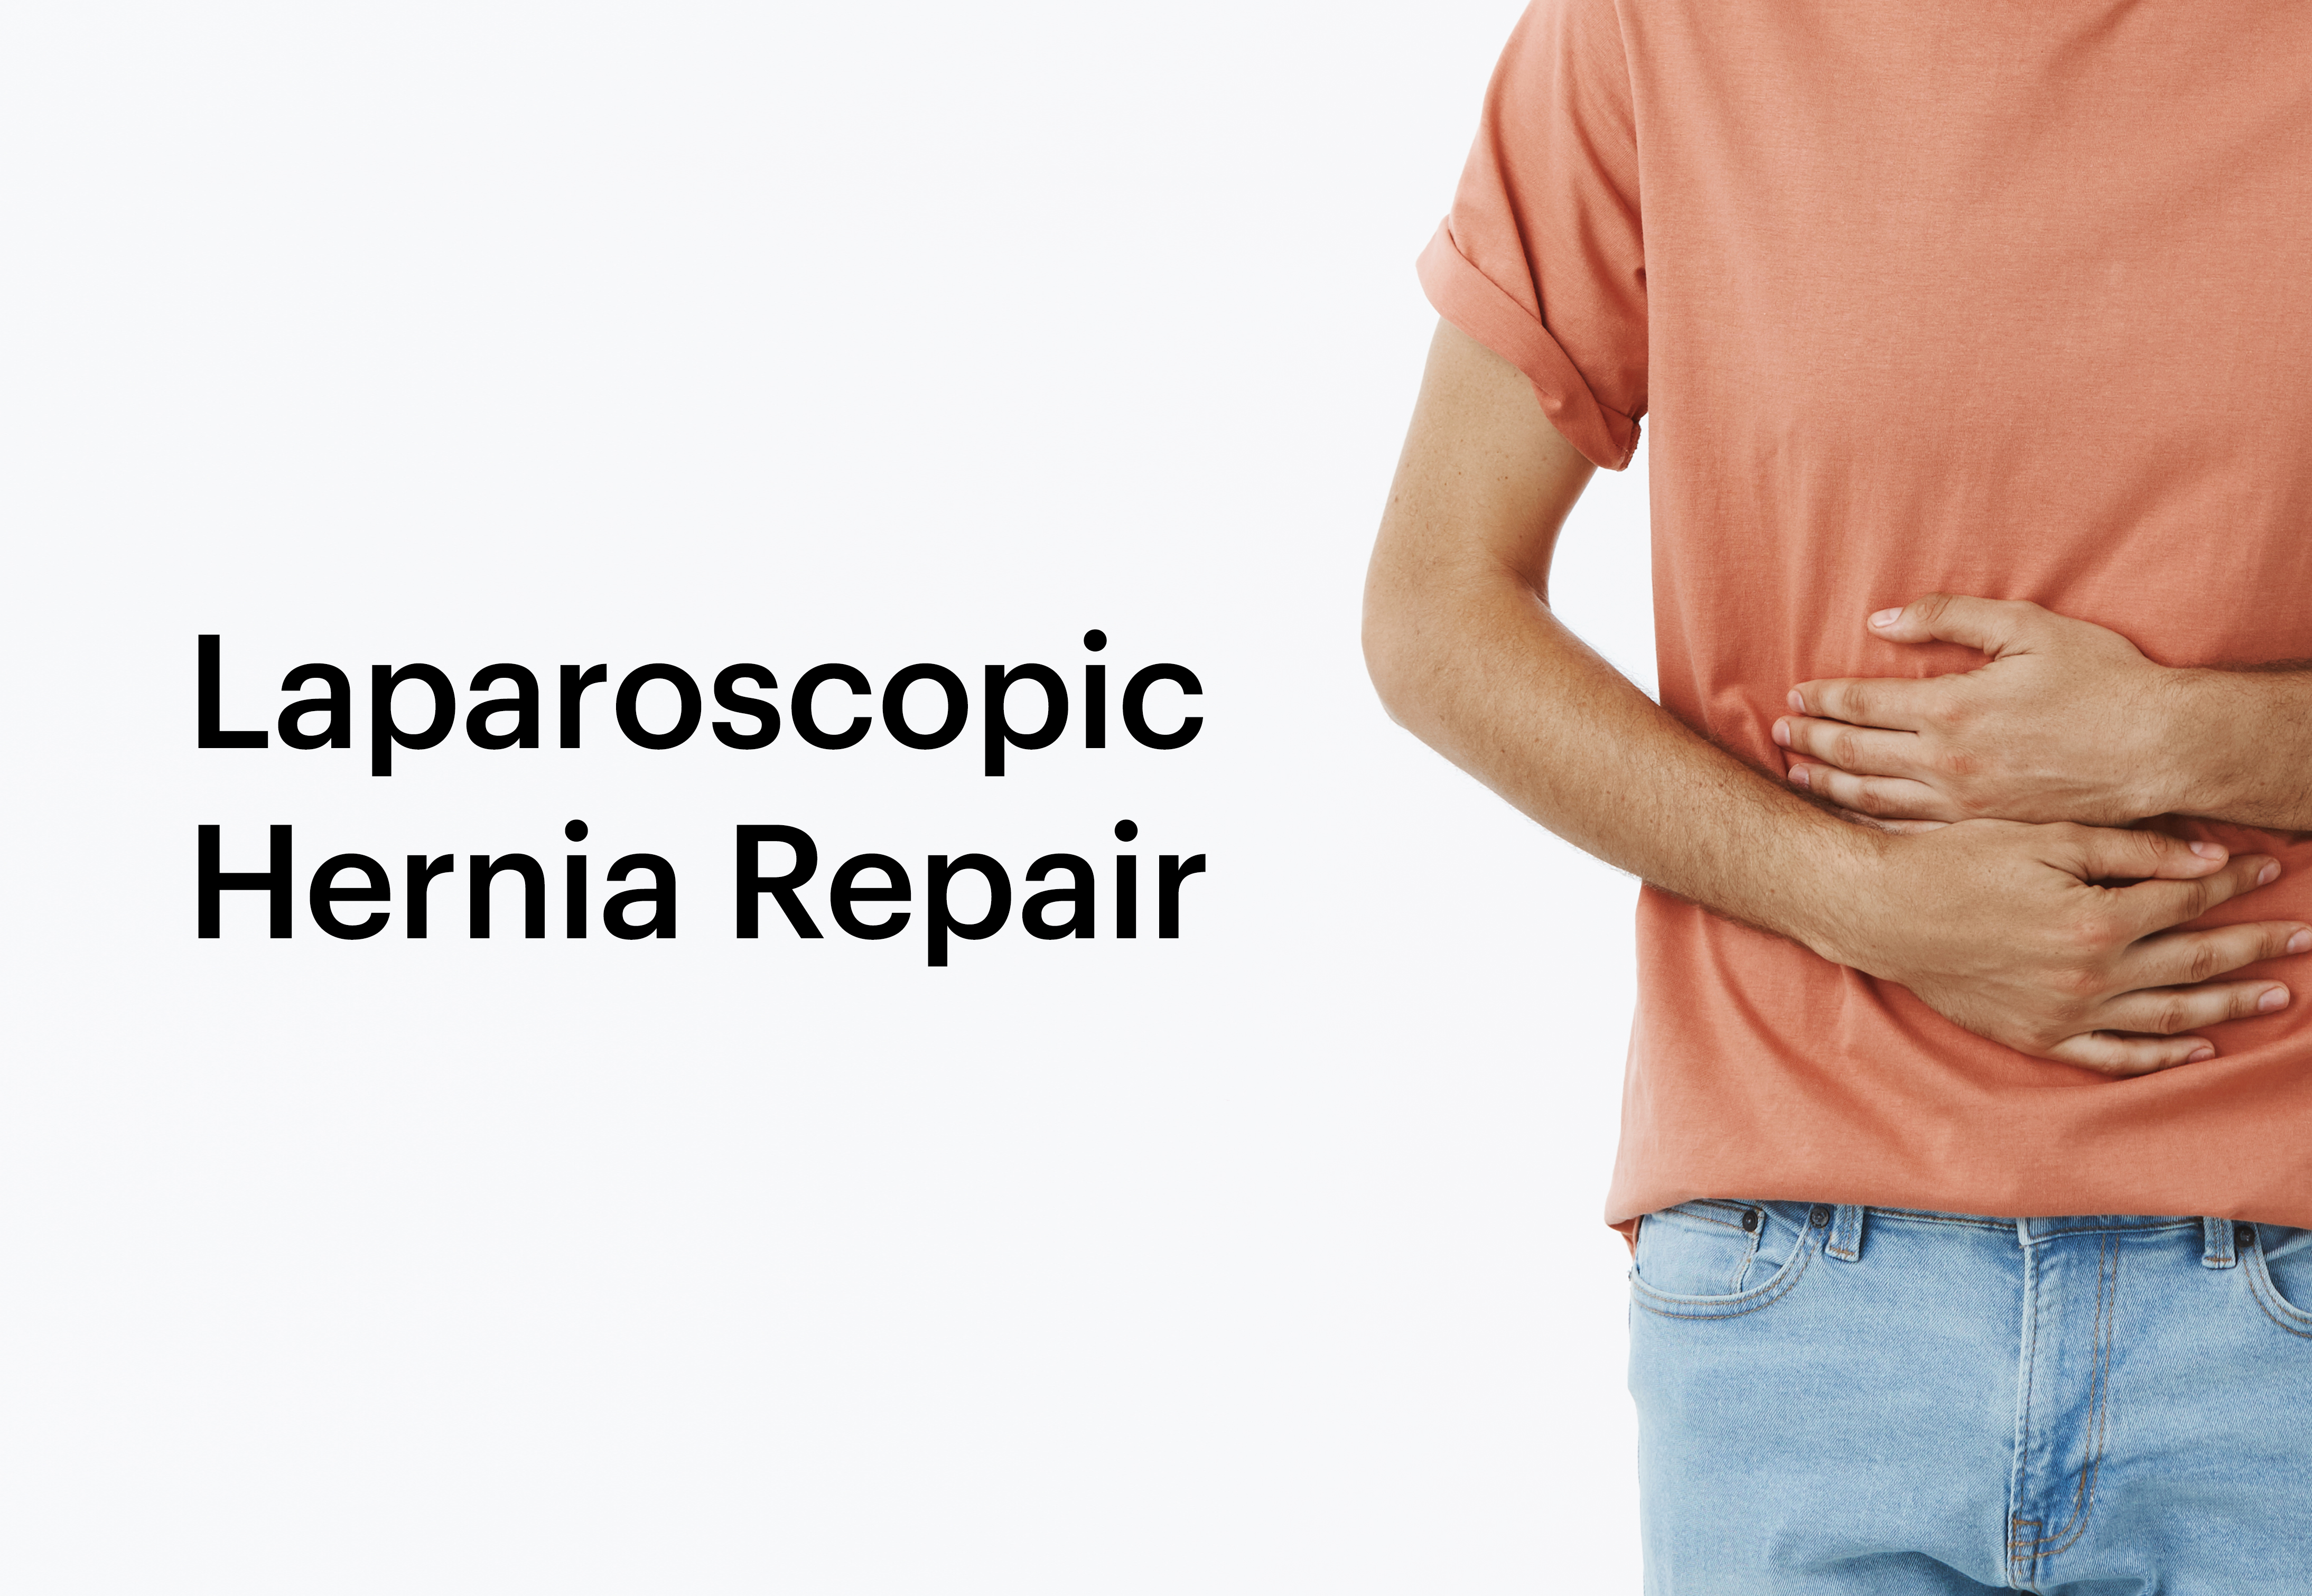 Laparoscopic Hernia Repair: Minimizing Discomfort, Maximizing Recovery.